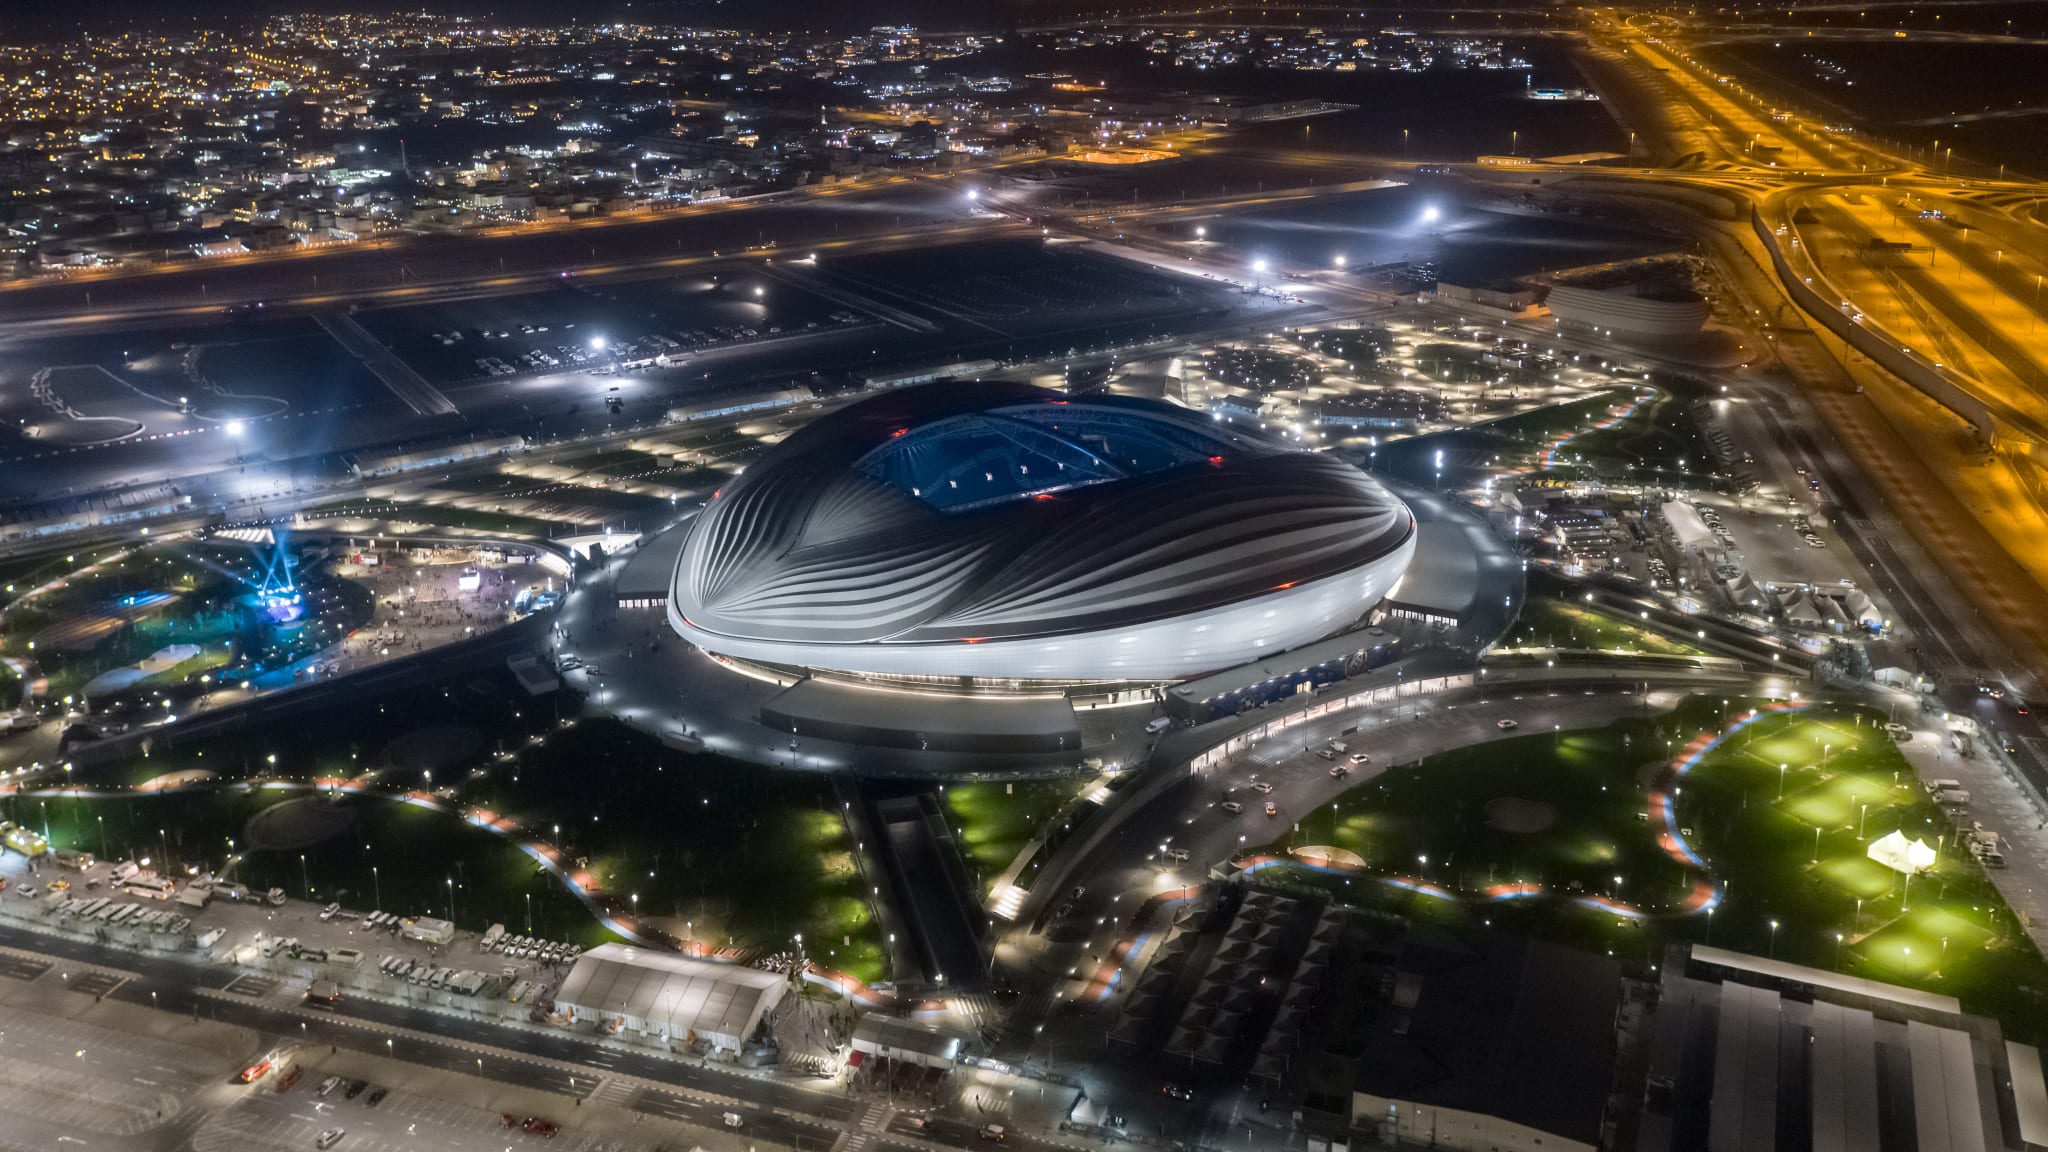 Tại sao World Cup 2022 lại được tổ chức tại Qatar? (Phần 1)